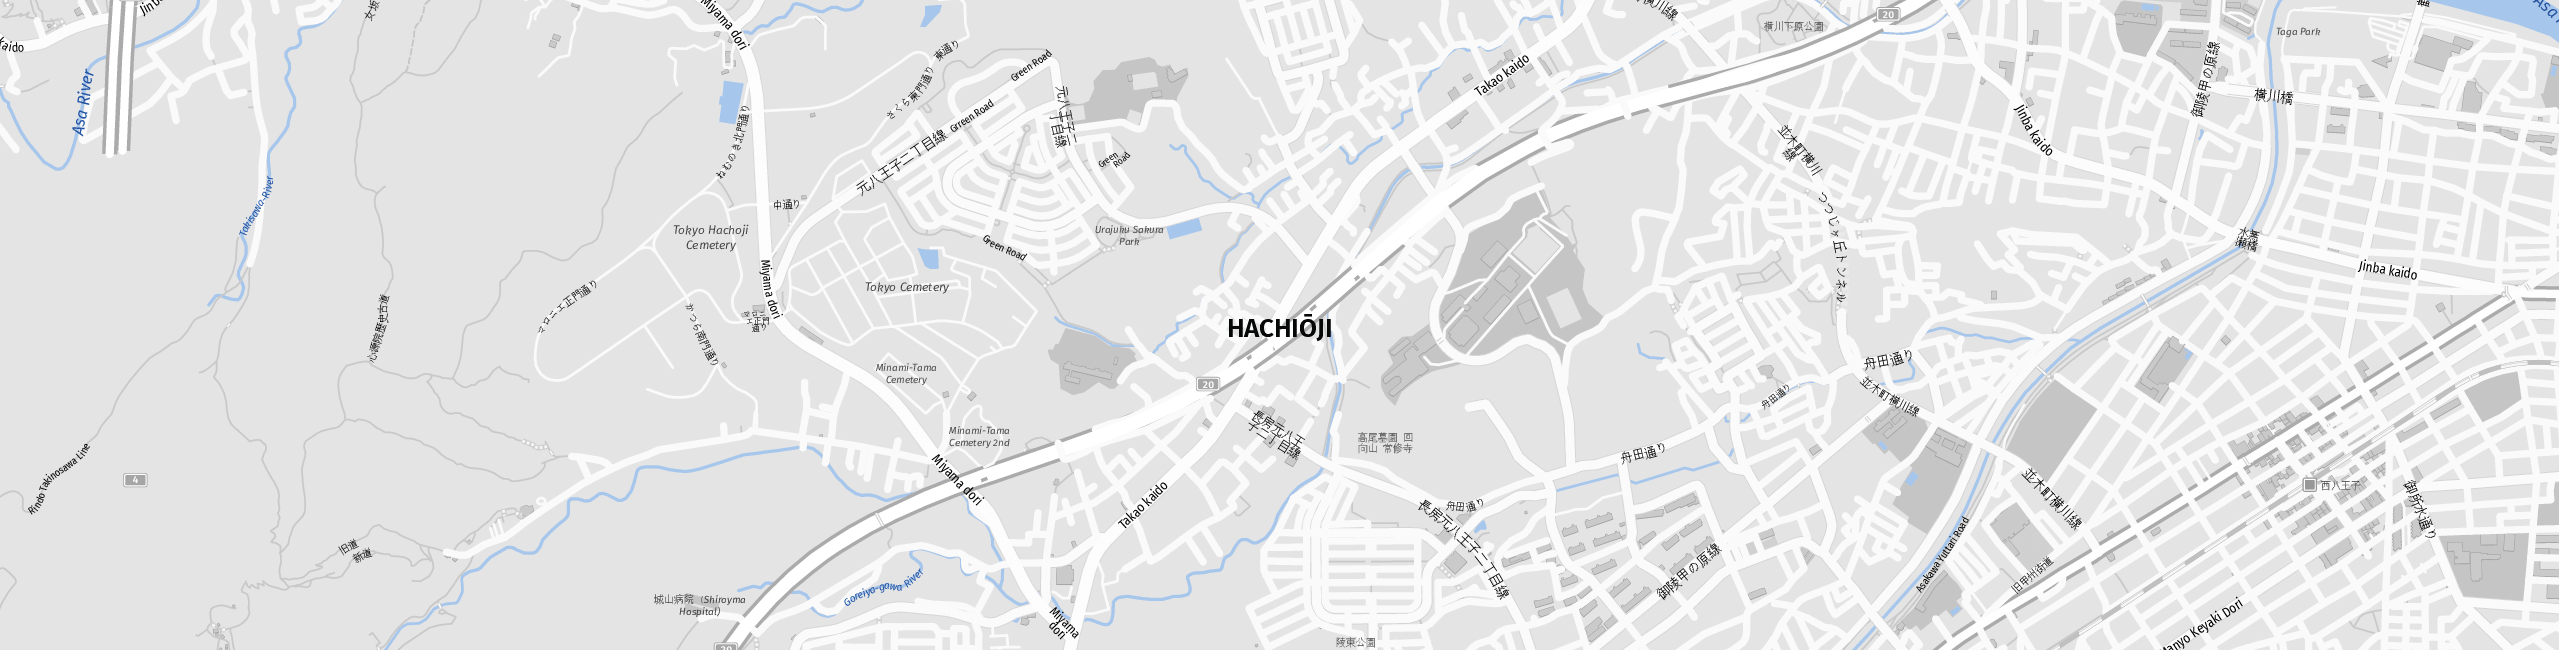 Stadtplan Hachioji zum Downloaden.